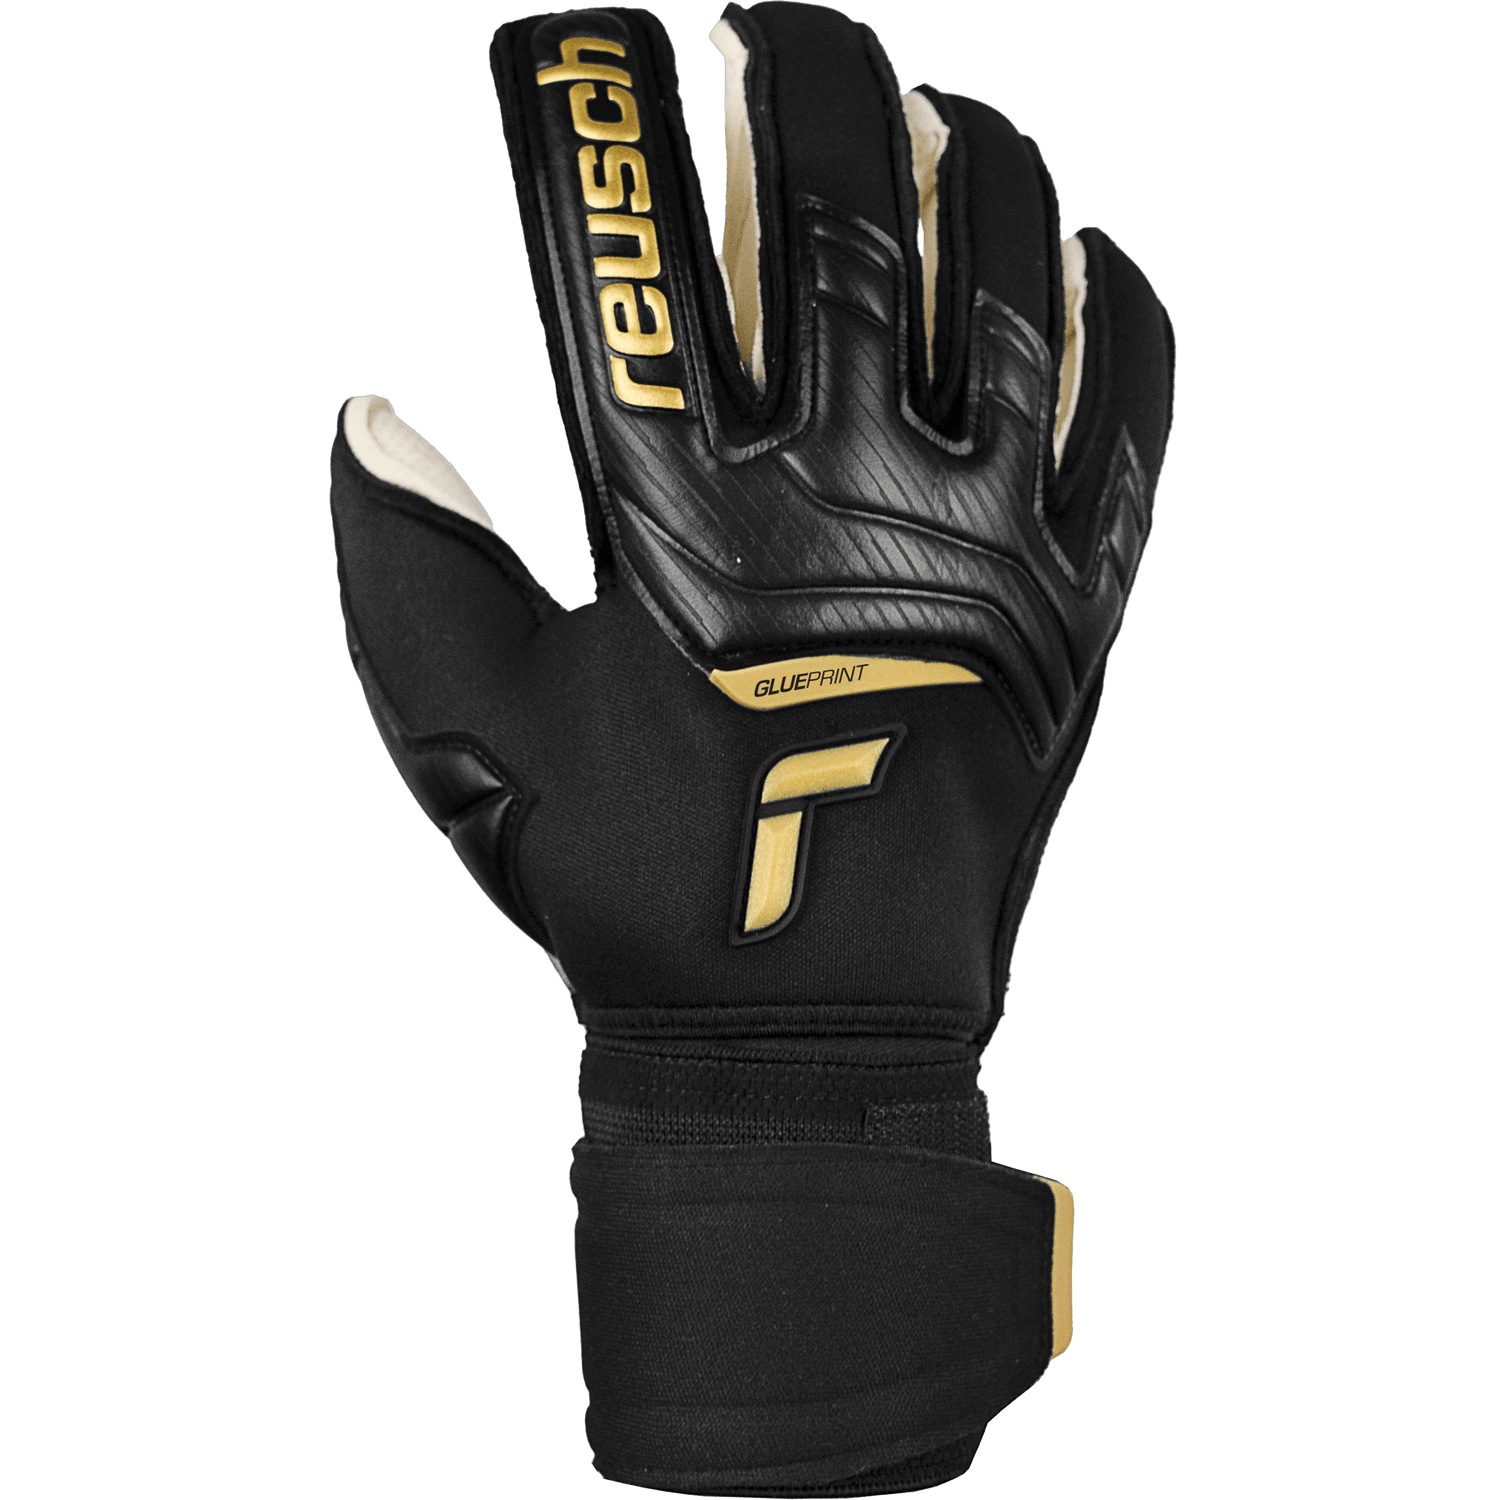 Reusch Attrakt Gold X Glueprint Ortho-Tec Goalkeeper Gloves - Black-Gold (Single - Outer)